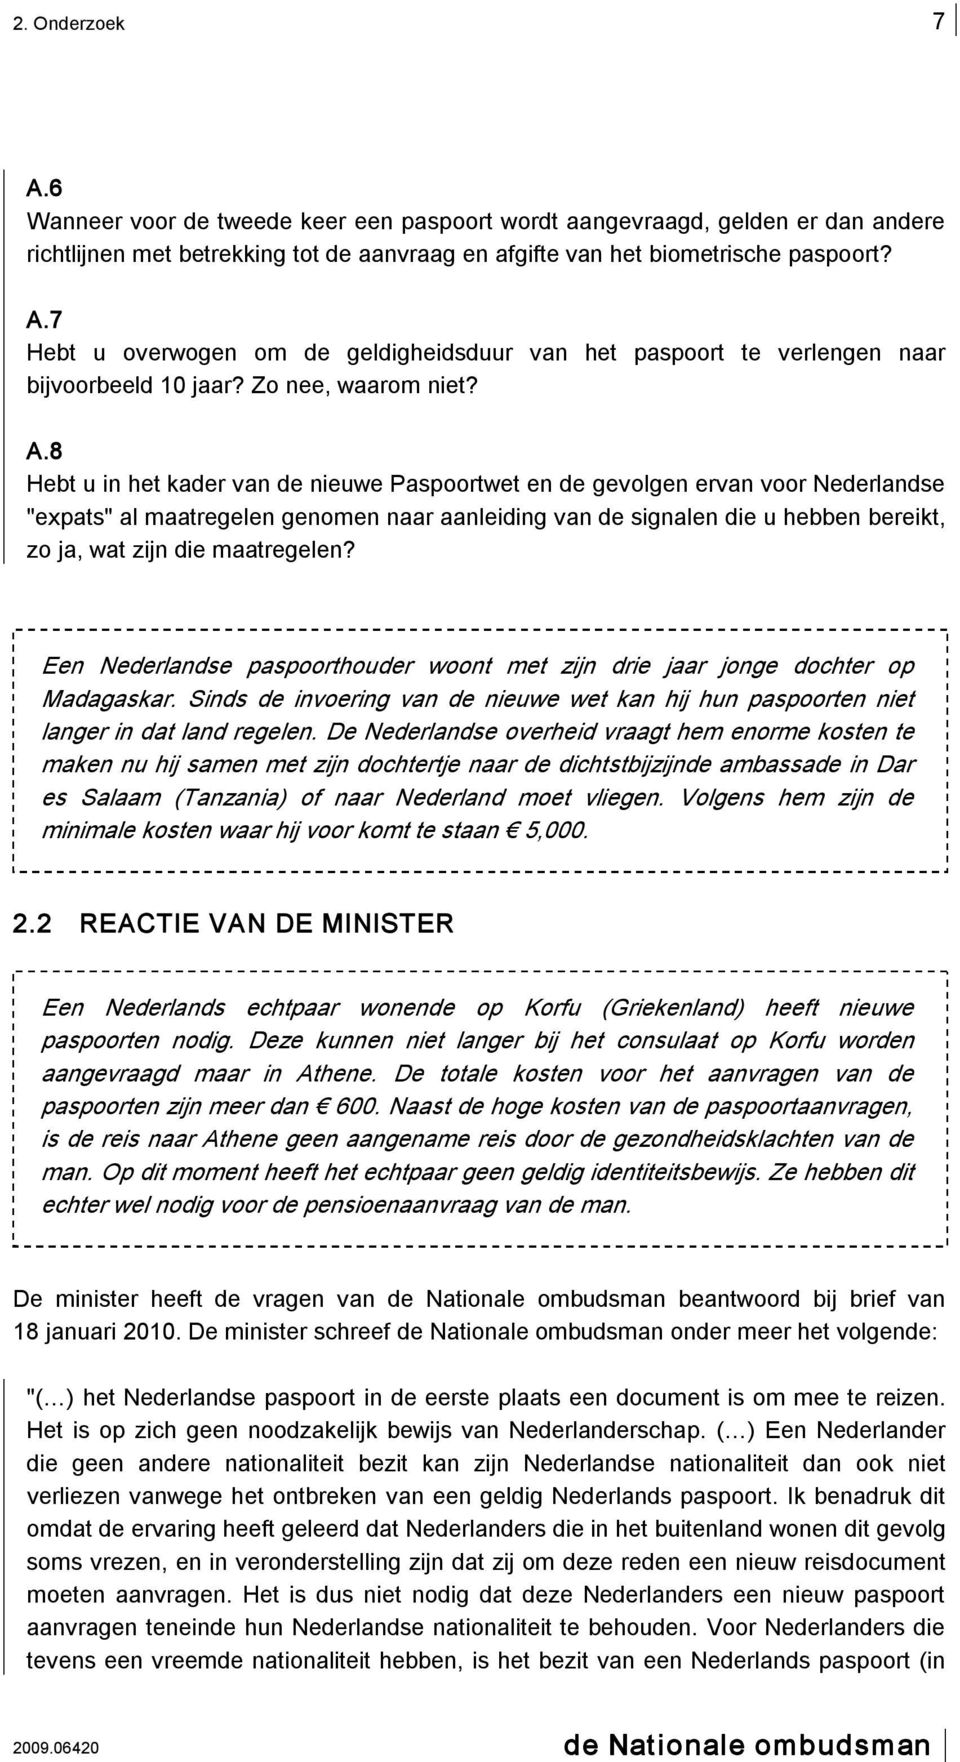 8 Hebt u in het kader van de nieuwe Paspoortwet en de gevolgen ervan voor Nederlandse "expats" al maatregelen genomen naar aanleiding van de signalen die u hebben bereikt, zo ja, wat zijn die